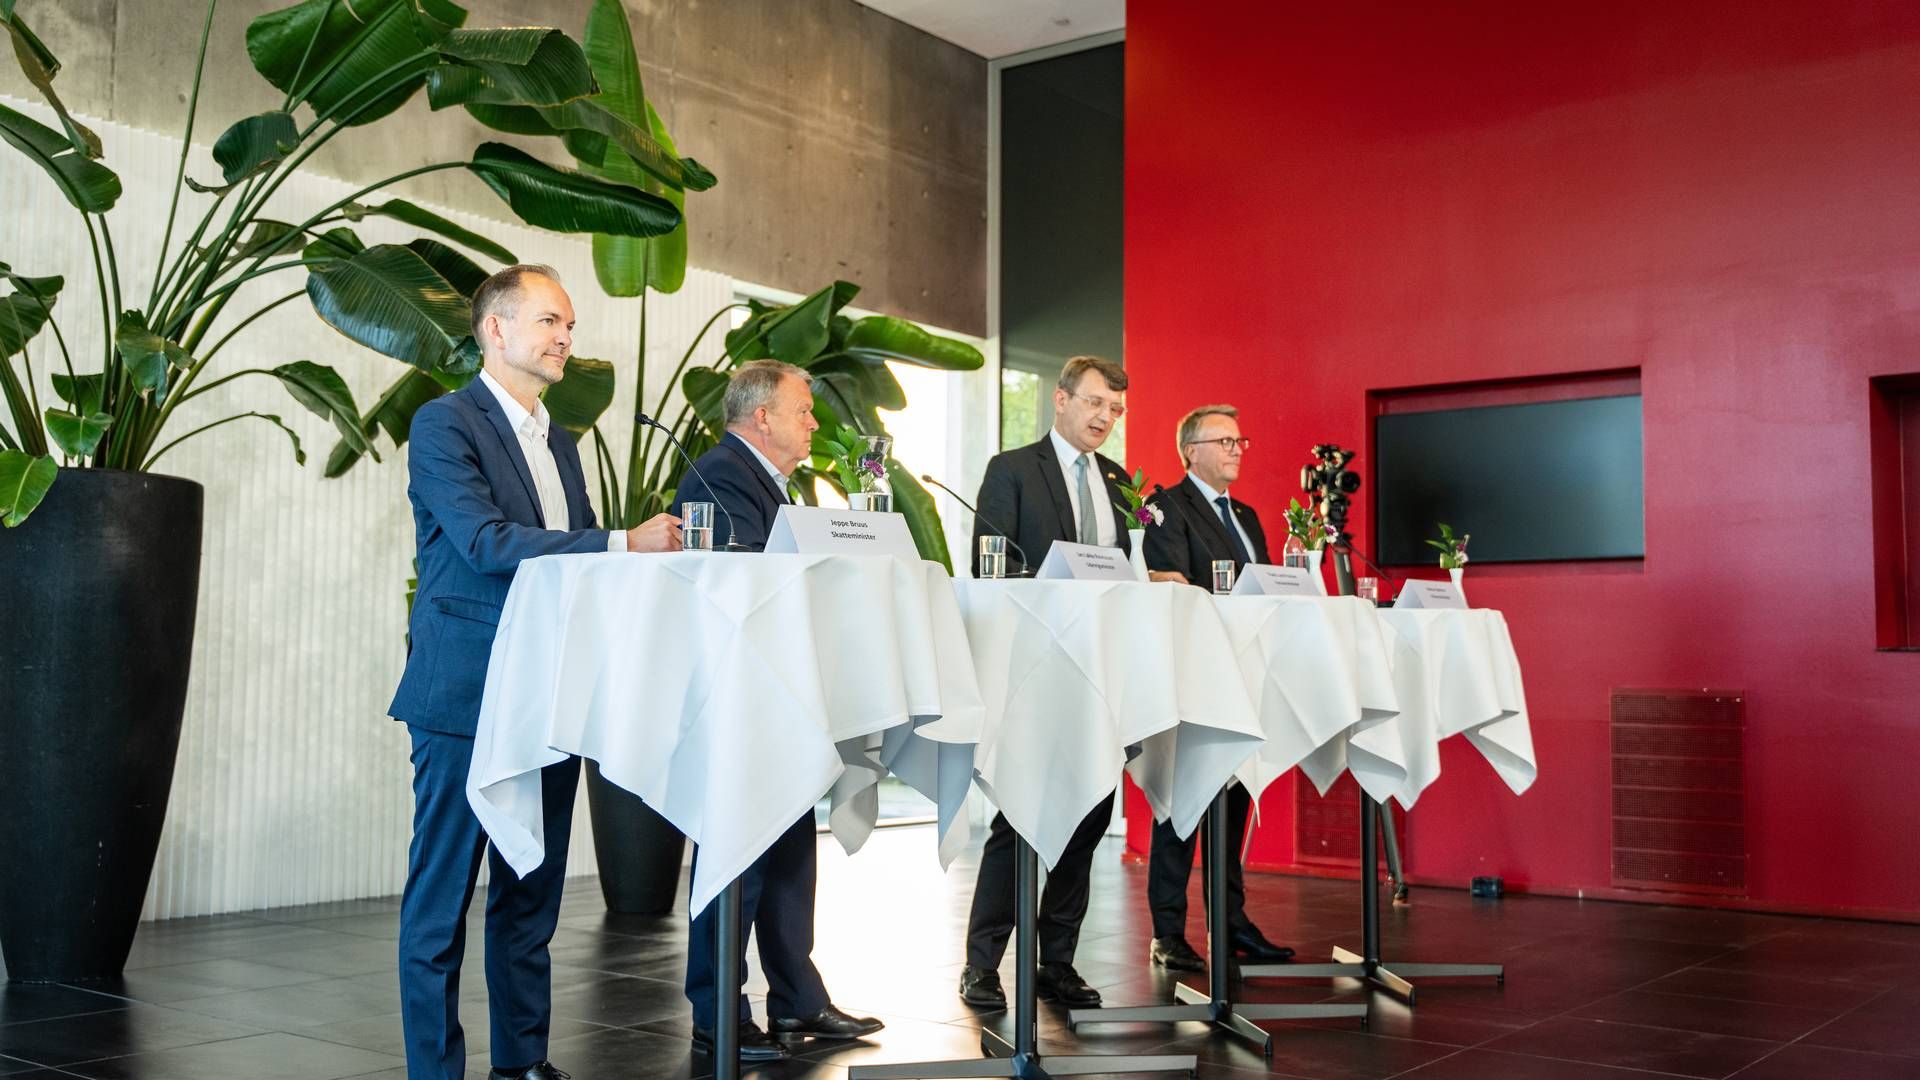 Regeringen præsenterede ved et pressemøde hos virksomheden Lundbeck sit udspil til blandt andet et højere fradrag for udgifter til forskning og udvikling. | Foto: Emil Nicolai Helms